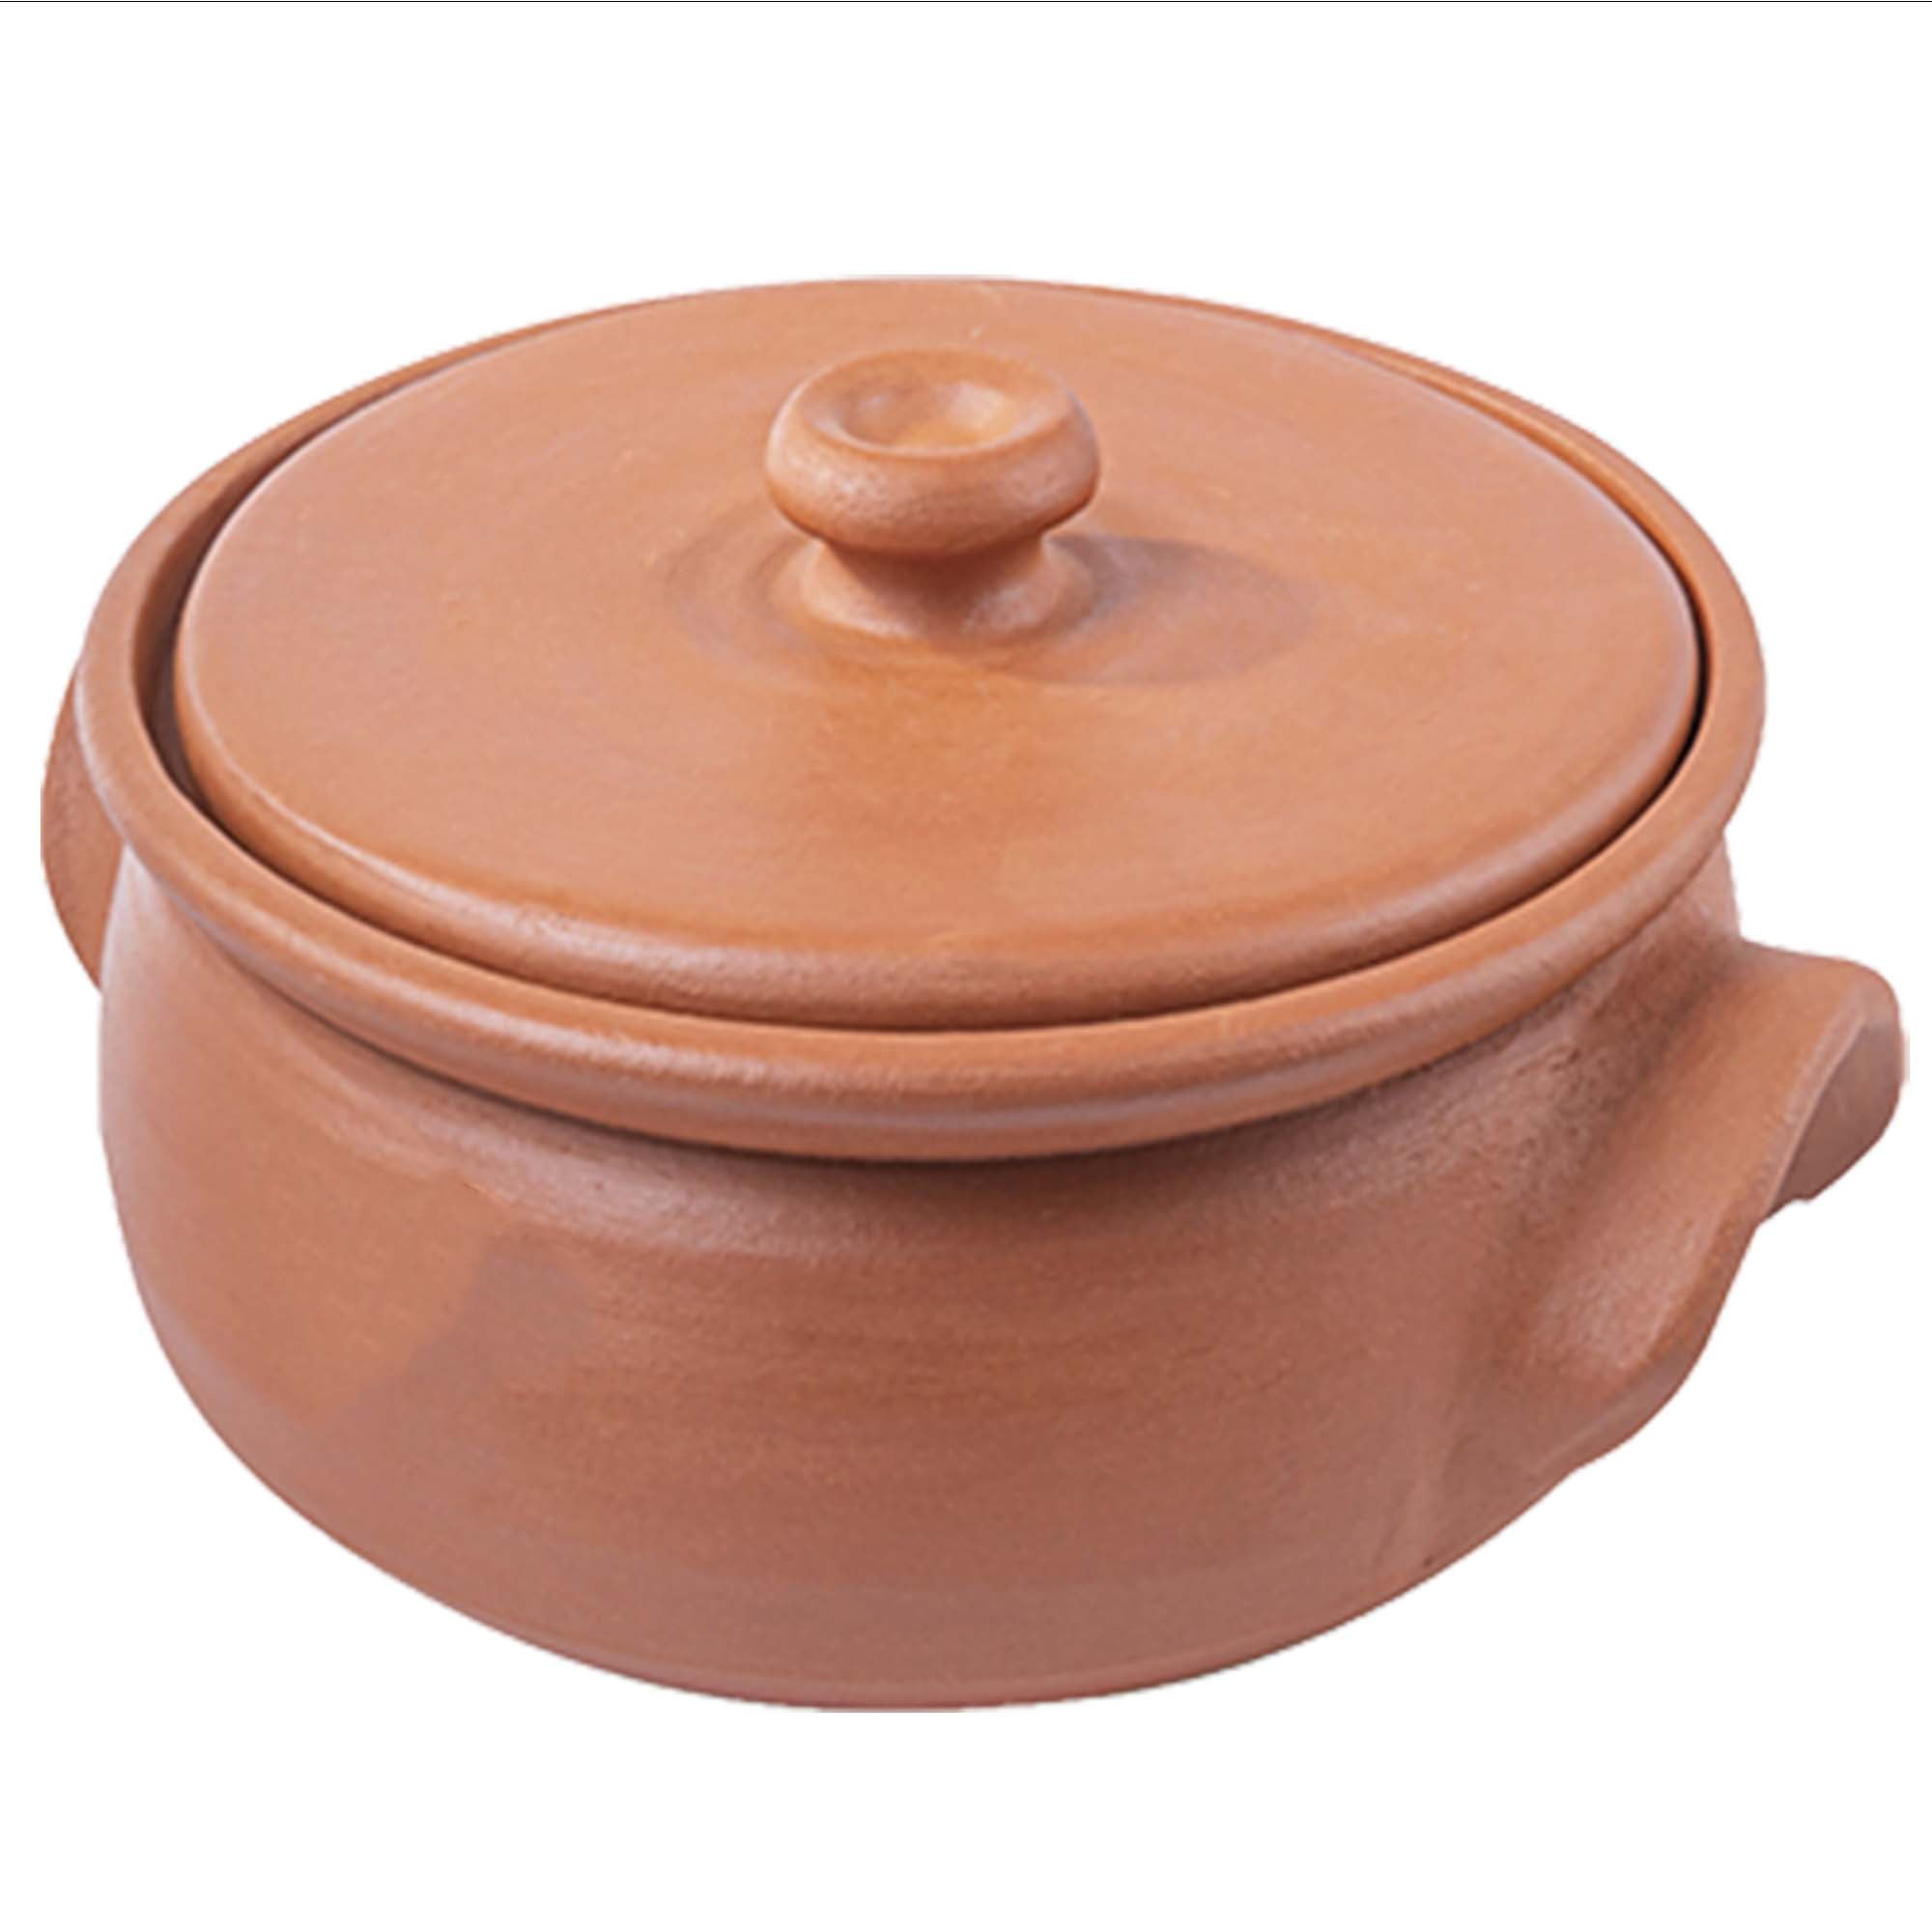 Village Decor Earthen clay cooking pot with lid (Porridge pot-2.1qt)